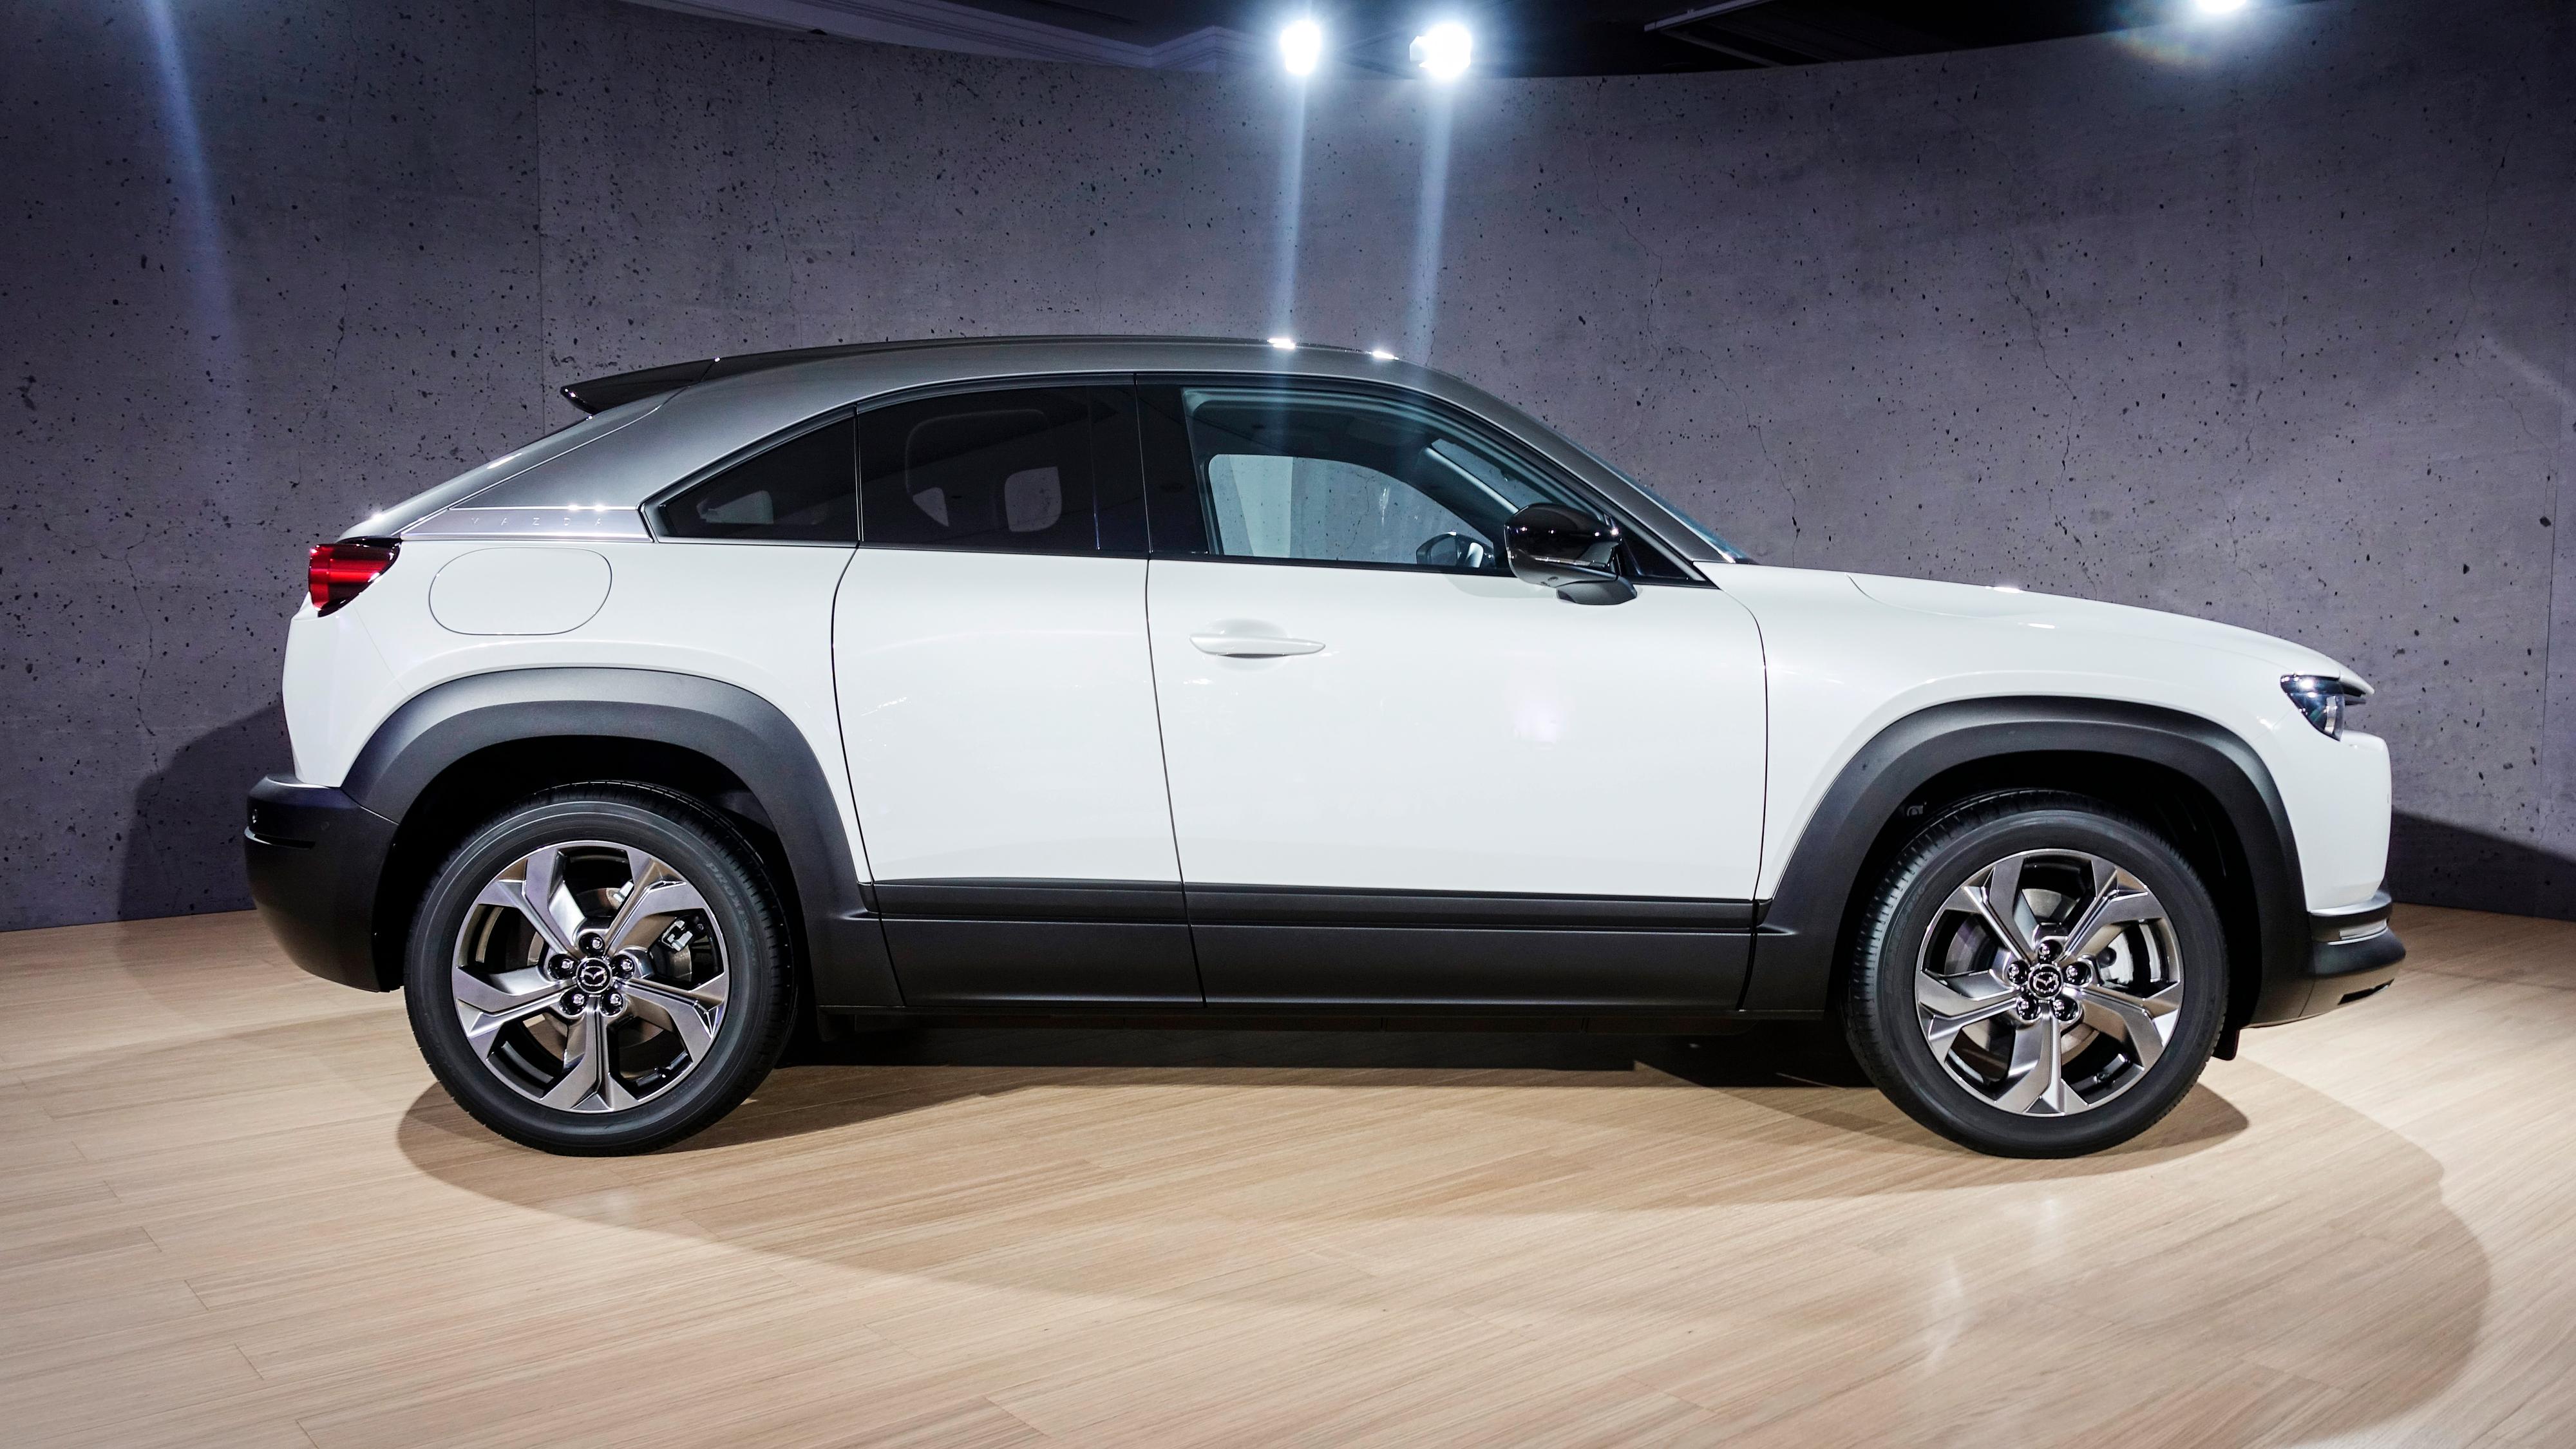 Mazda håper å friste elbilkundene med kjøreopplevelse, ikke rekkevidde